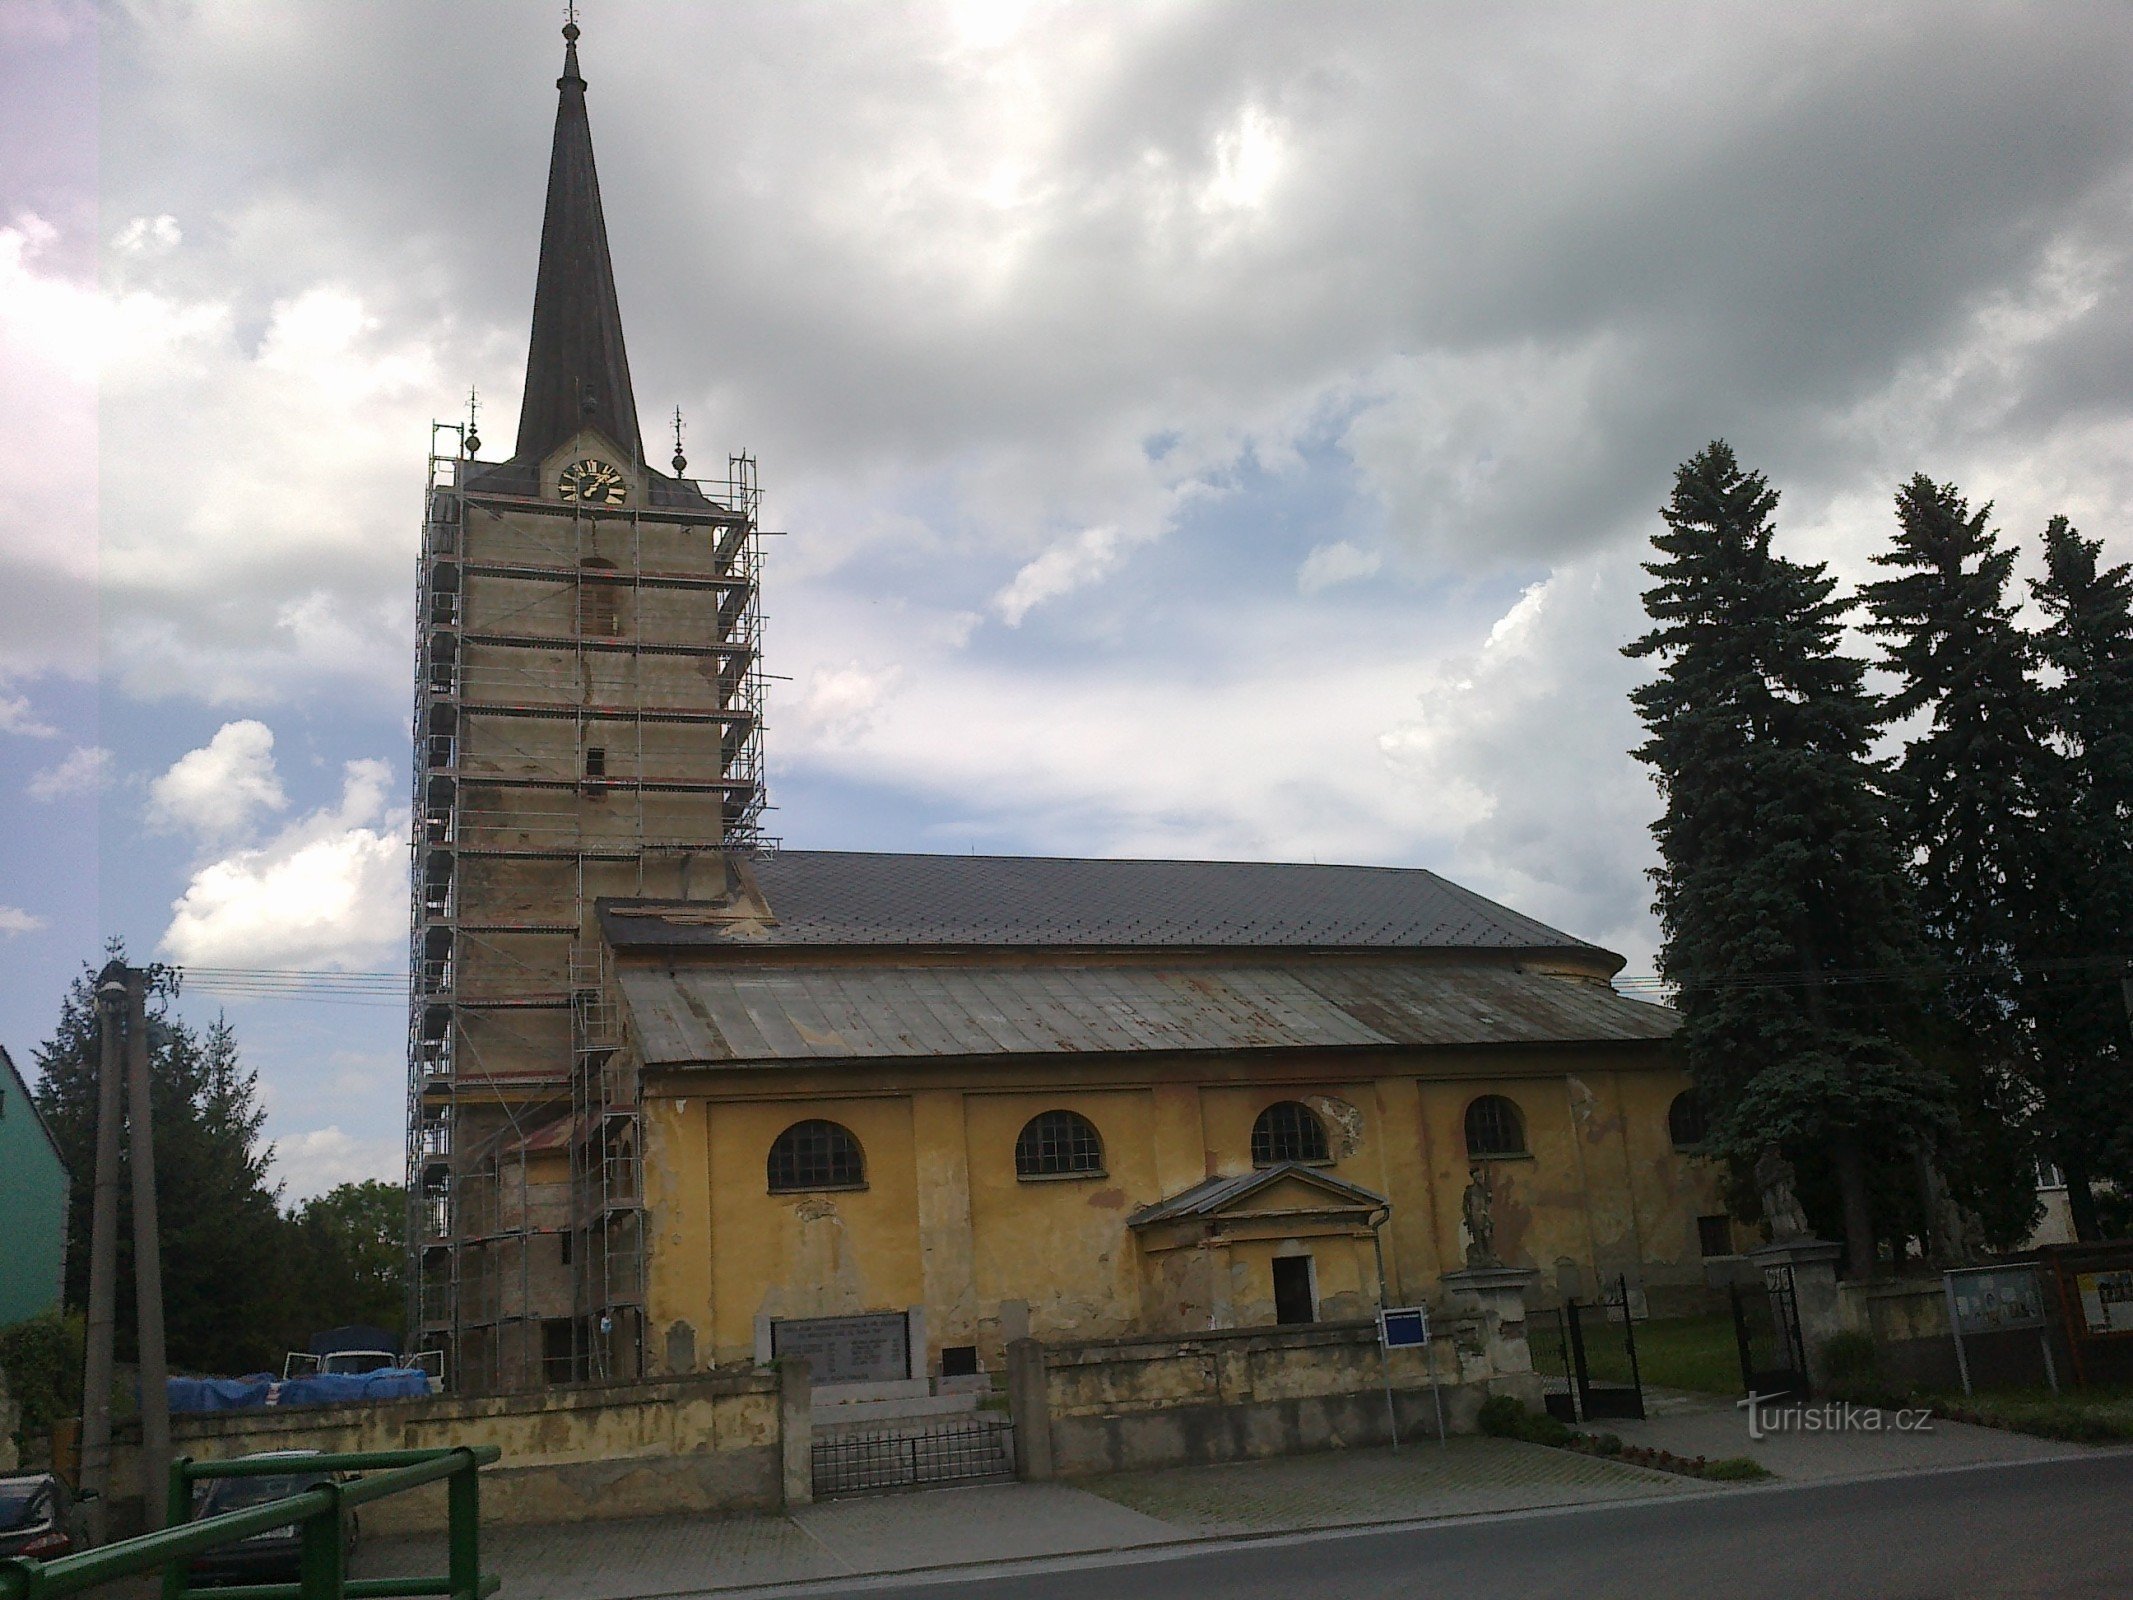 Crkva sv. Nikola